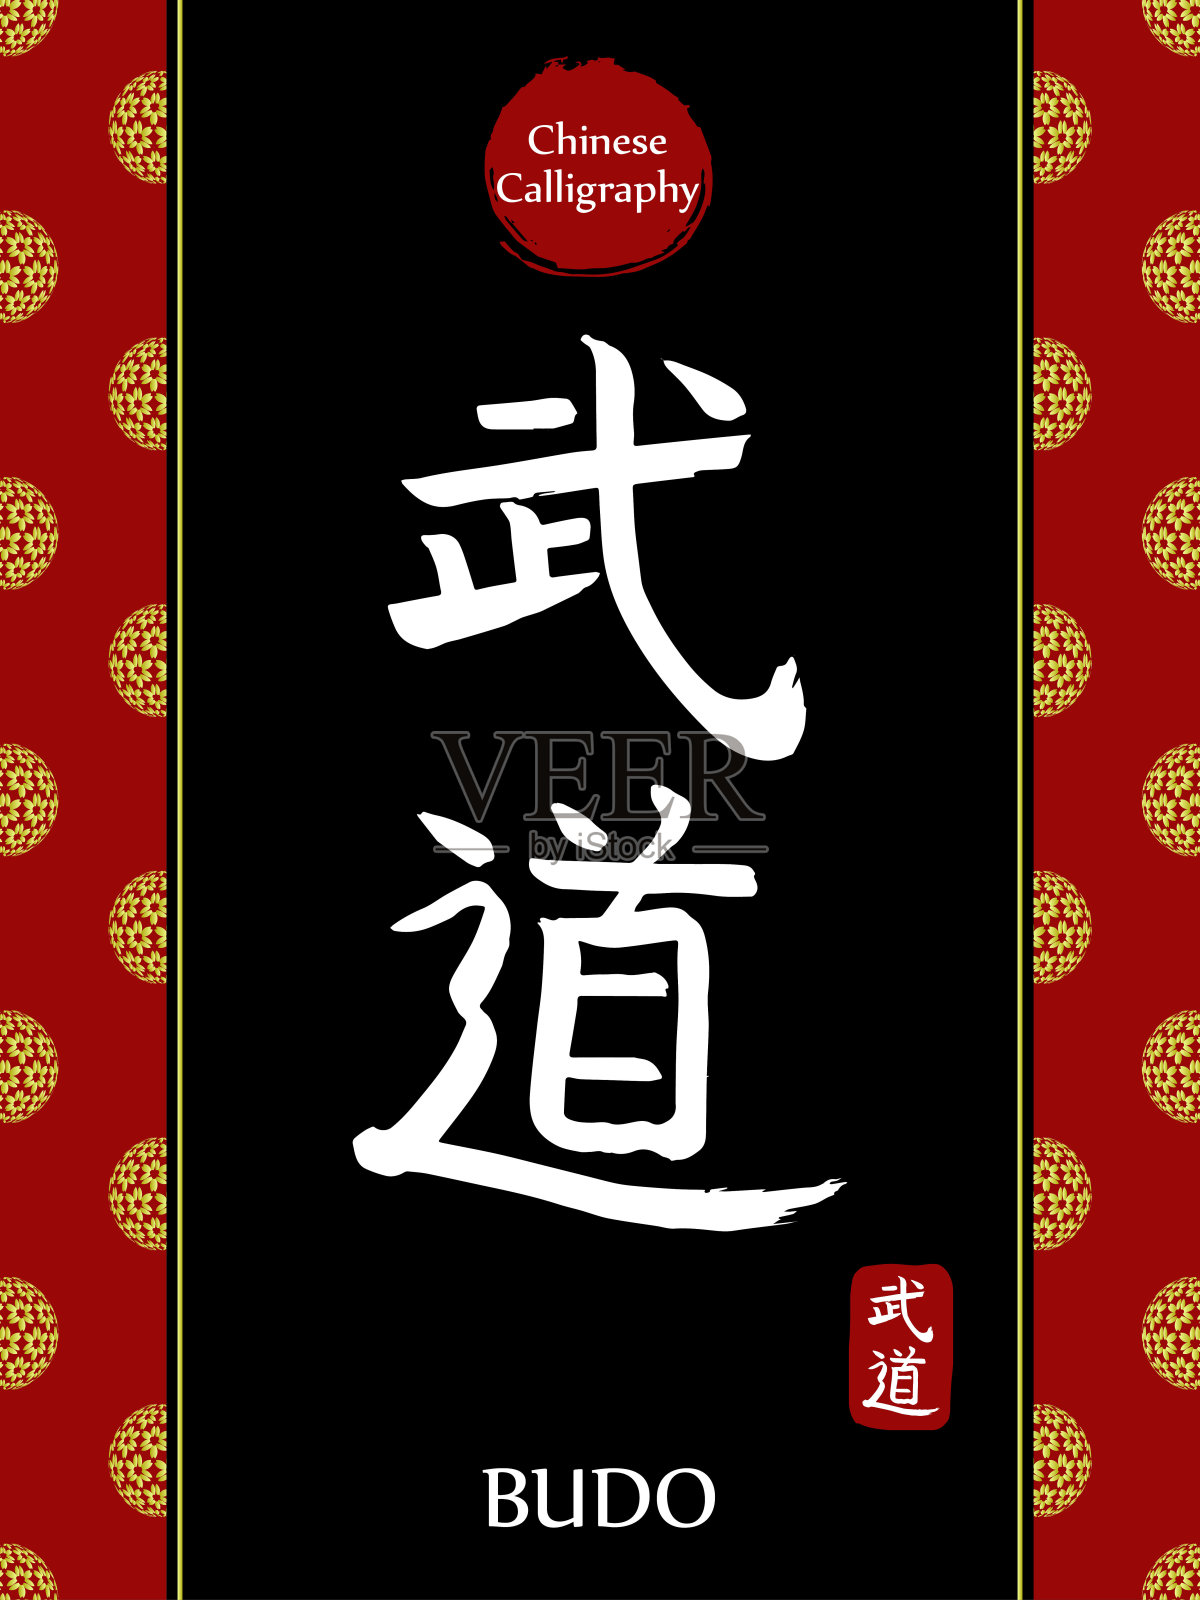 中国书法象形文字的翻译:武道。亚洲金花球农历新年图案。向量中国符号在黑色背景。手绘图画文字。毛笔书法插画图片素材